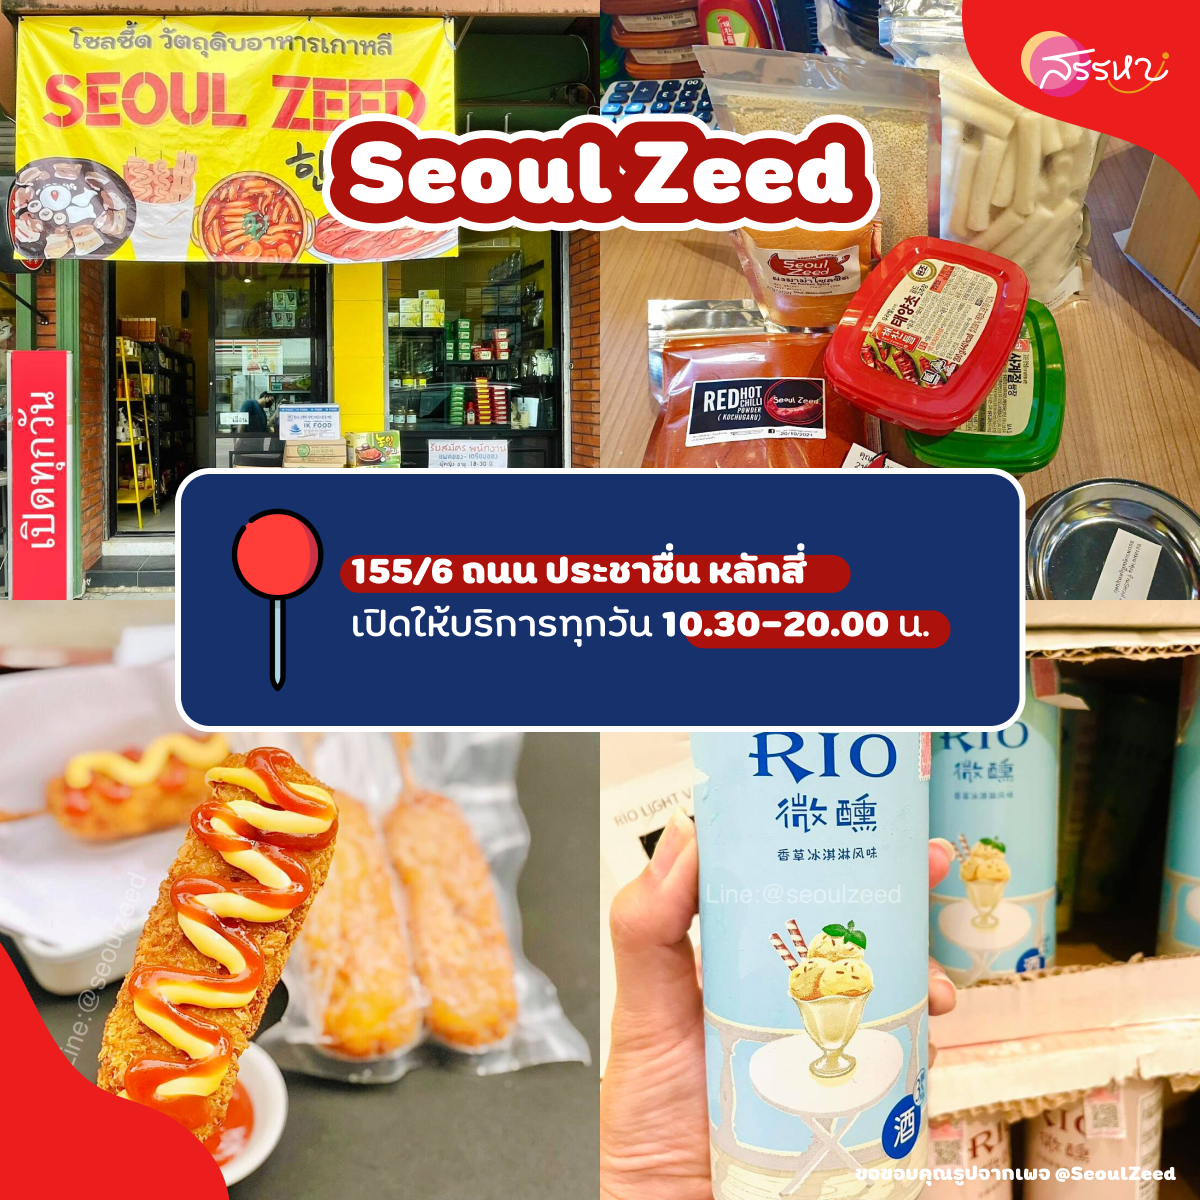 Seoul Zeed โซลซี๊ด